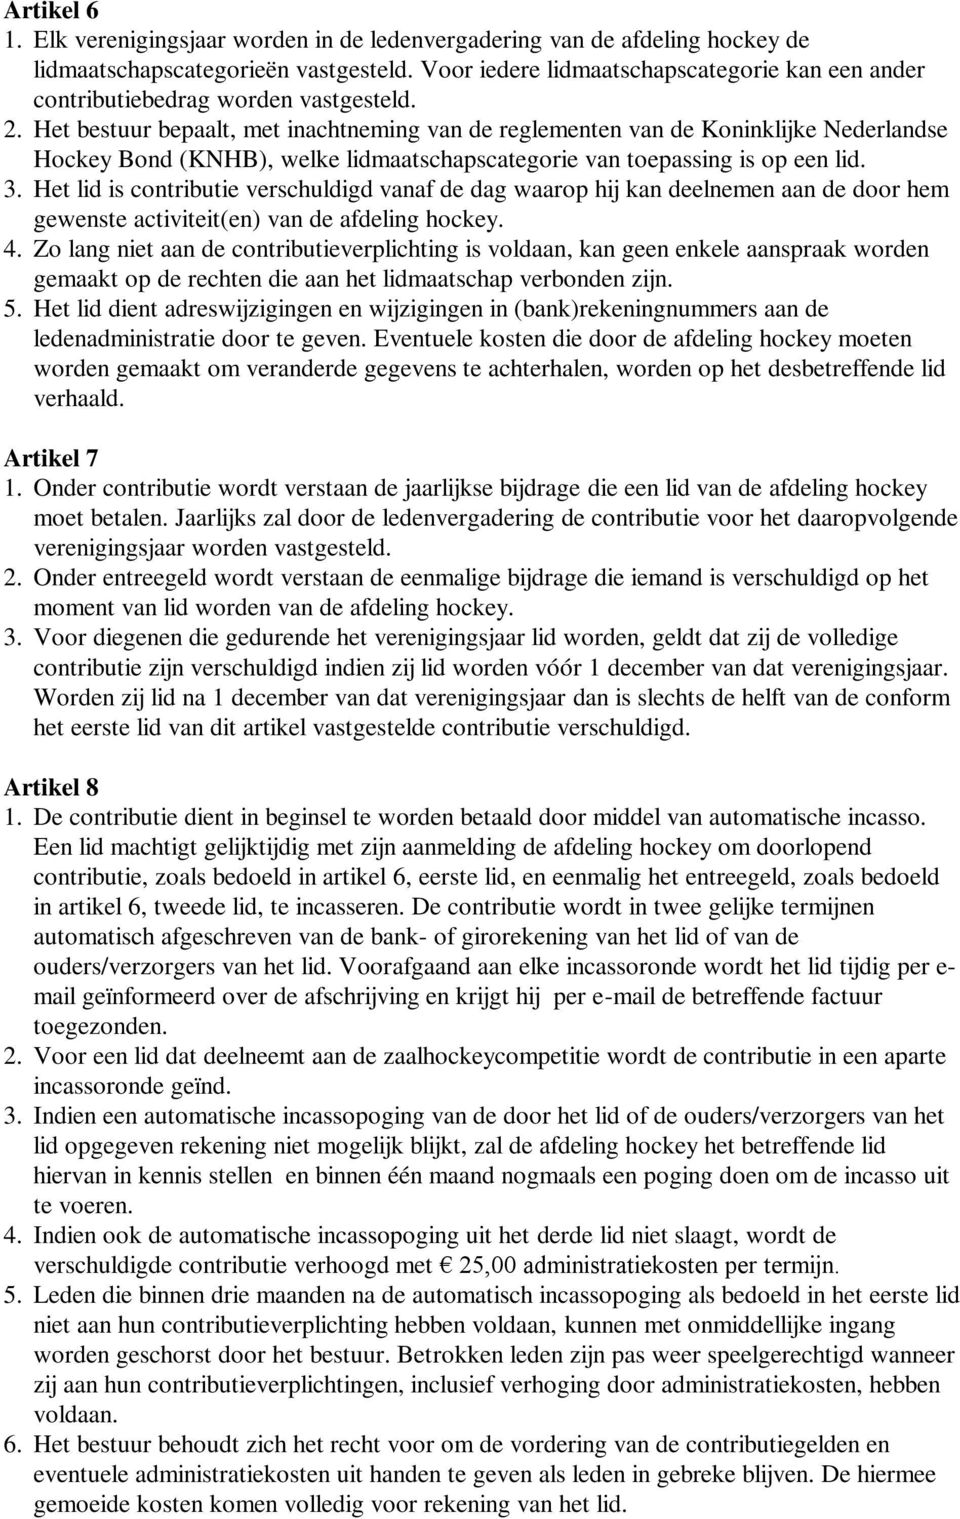 Het bestuur bepaalt, met inachtneming van de reglementen van de Koninklijke Nederlandse Hockey Bond (KNHB), welke lidmaatschapscategorie van toepassing is op een lid. 3.